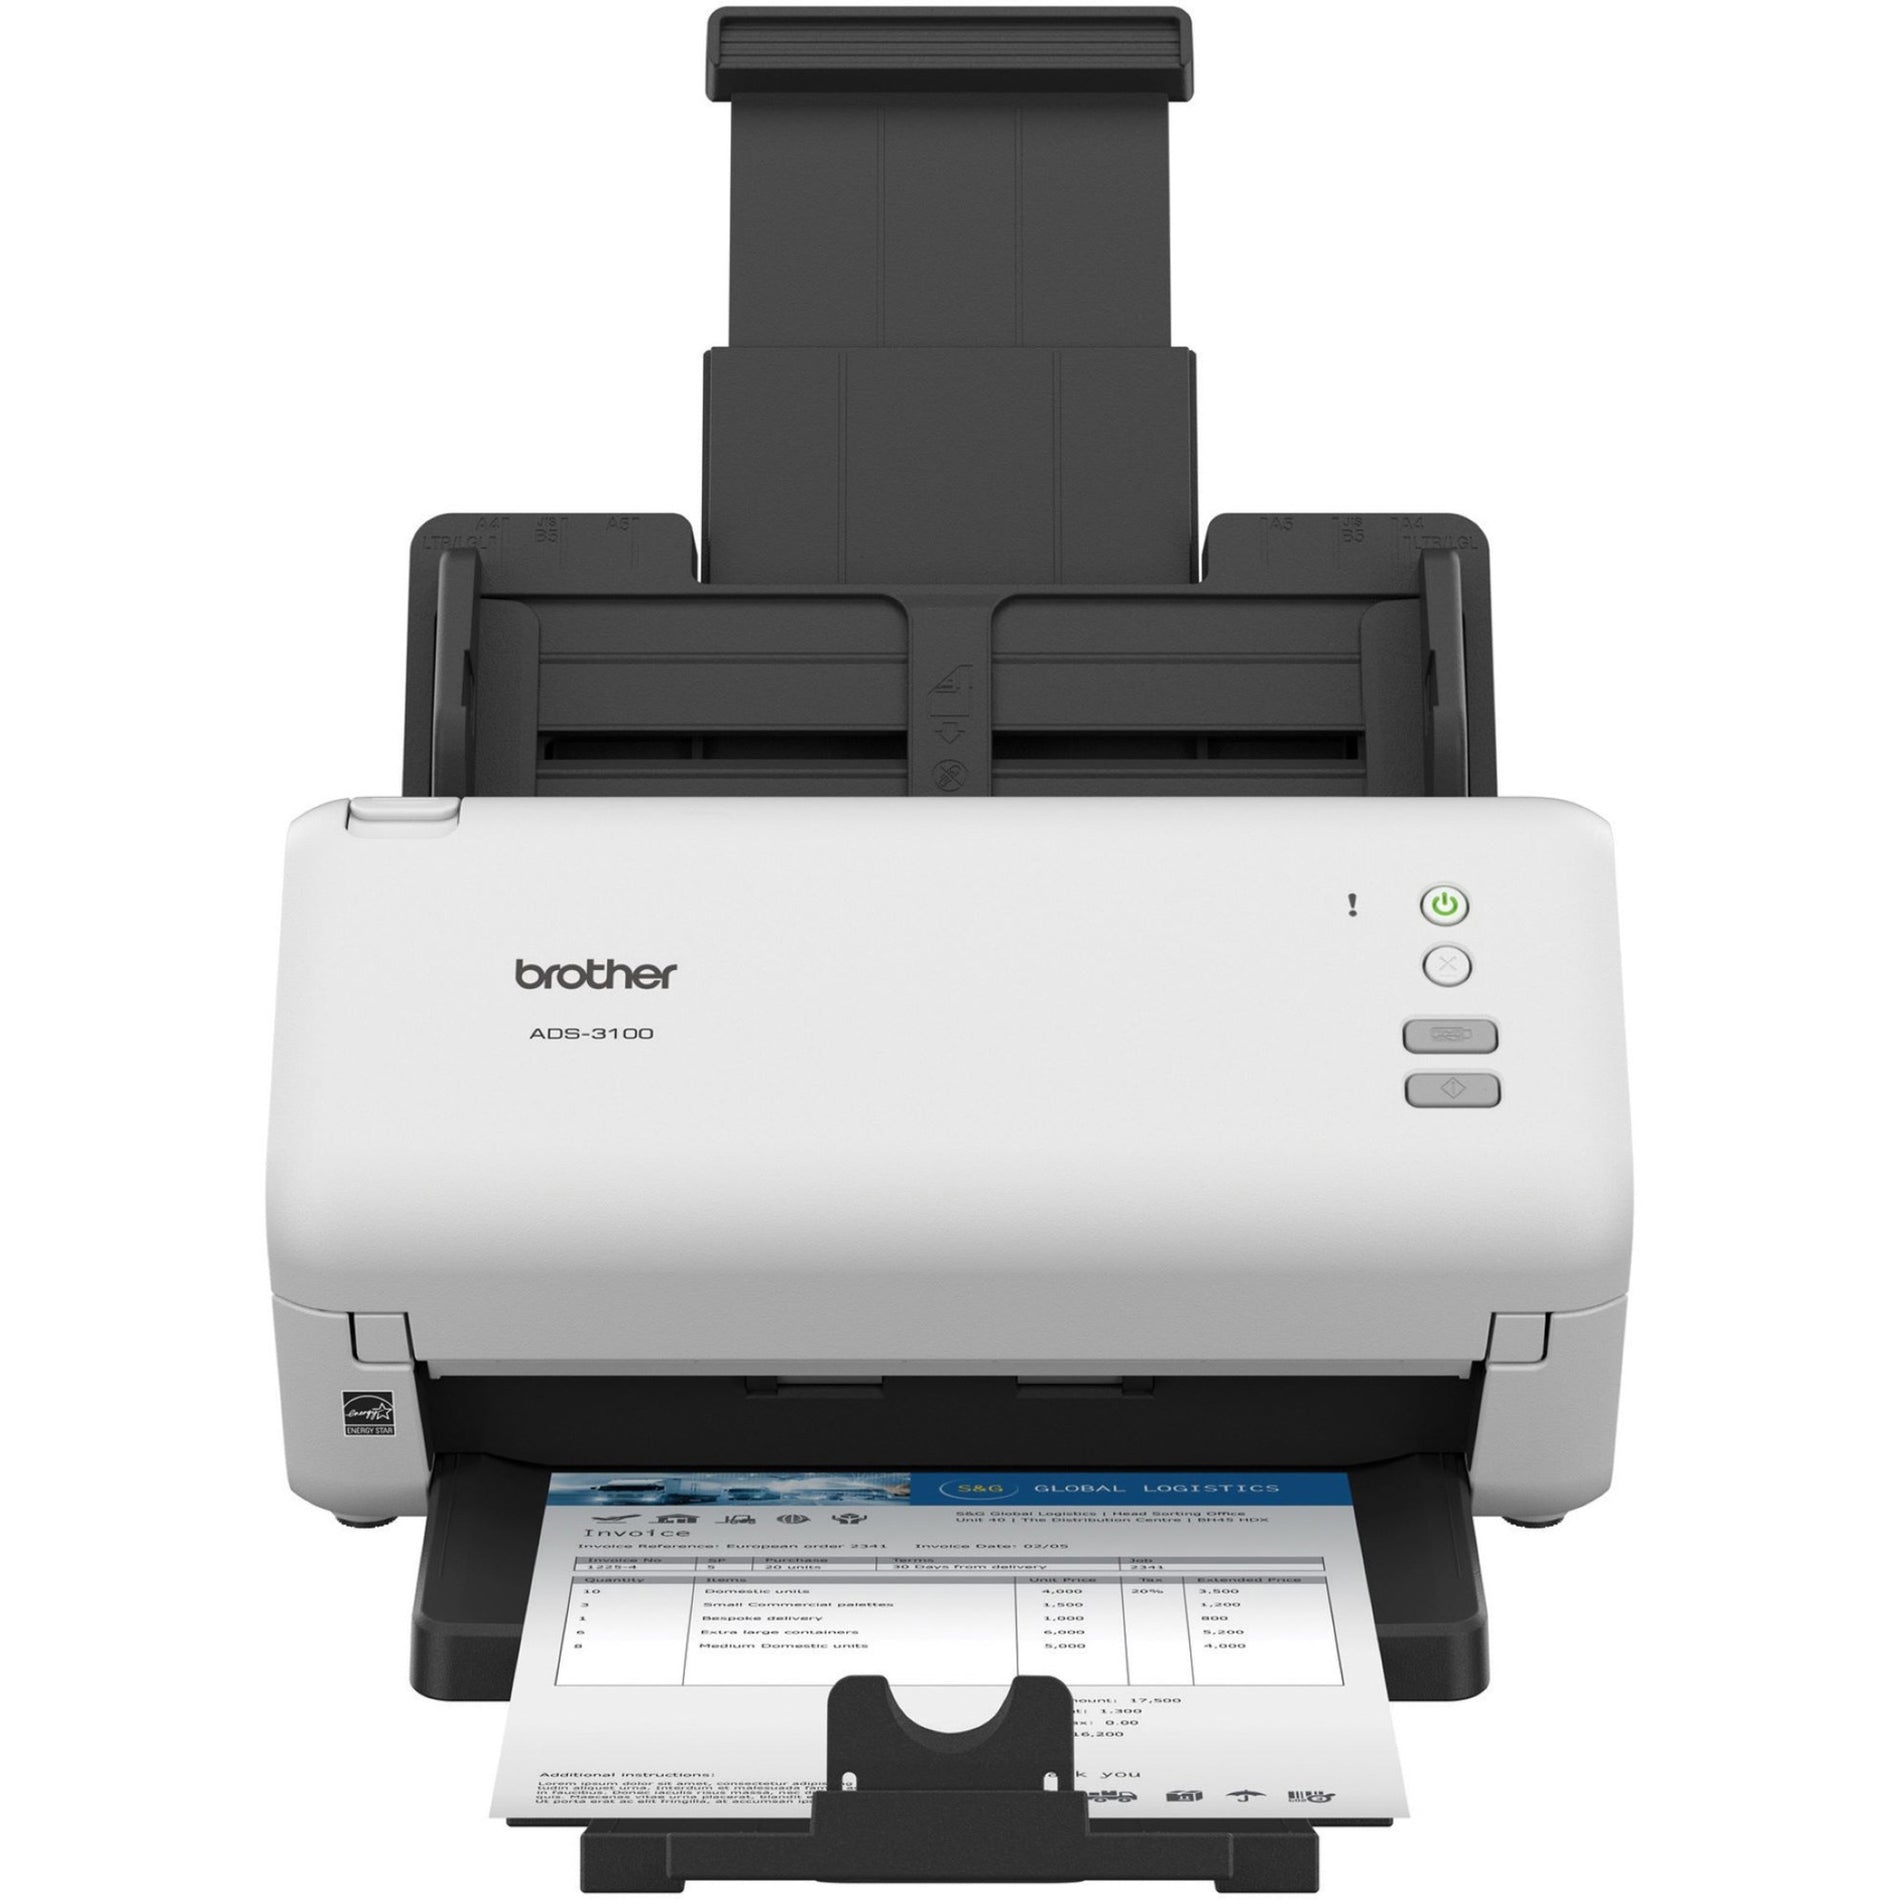 Brother ADS3100 High-Speed Desktop Scanner - Scan Color, Duplex Scanning, 600 x 600 dpi Optical, 80 ipm, 40 ppm